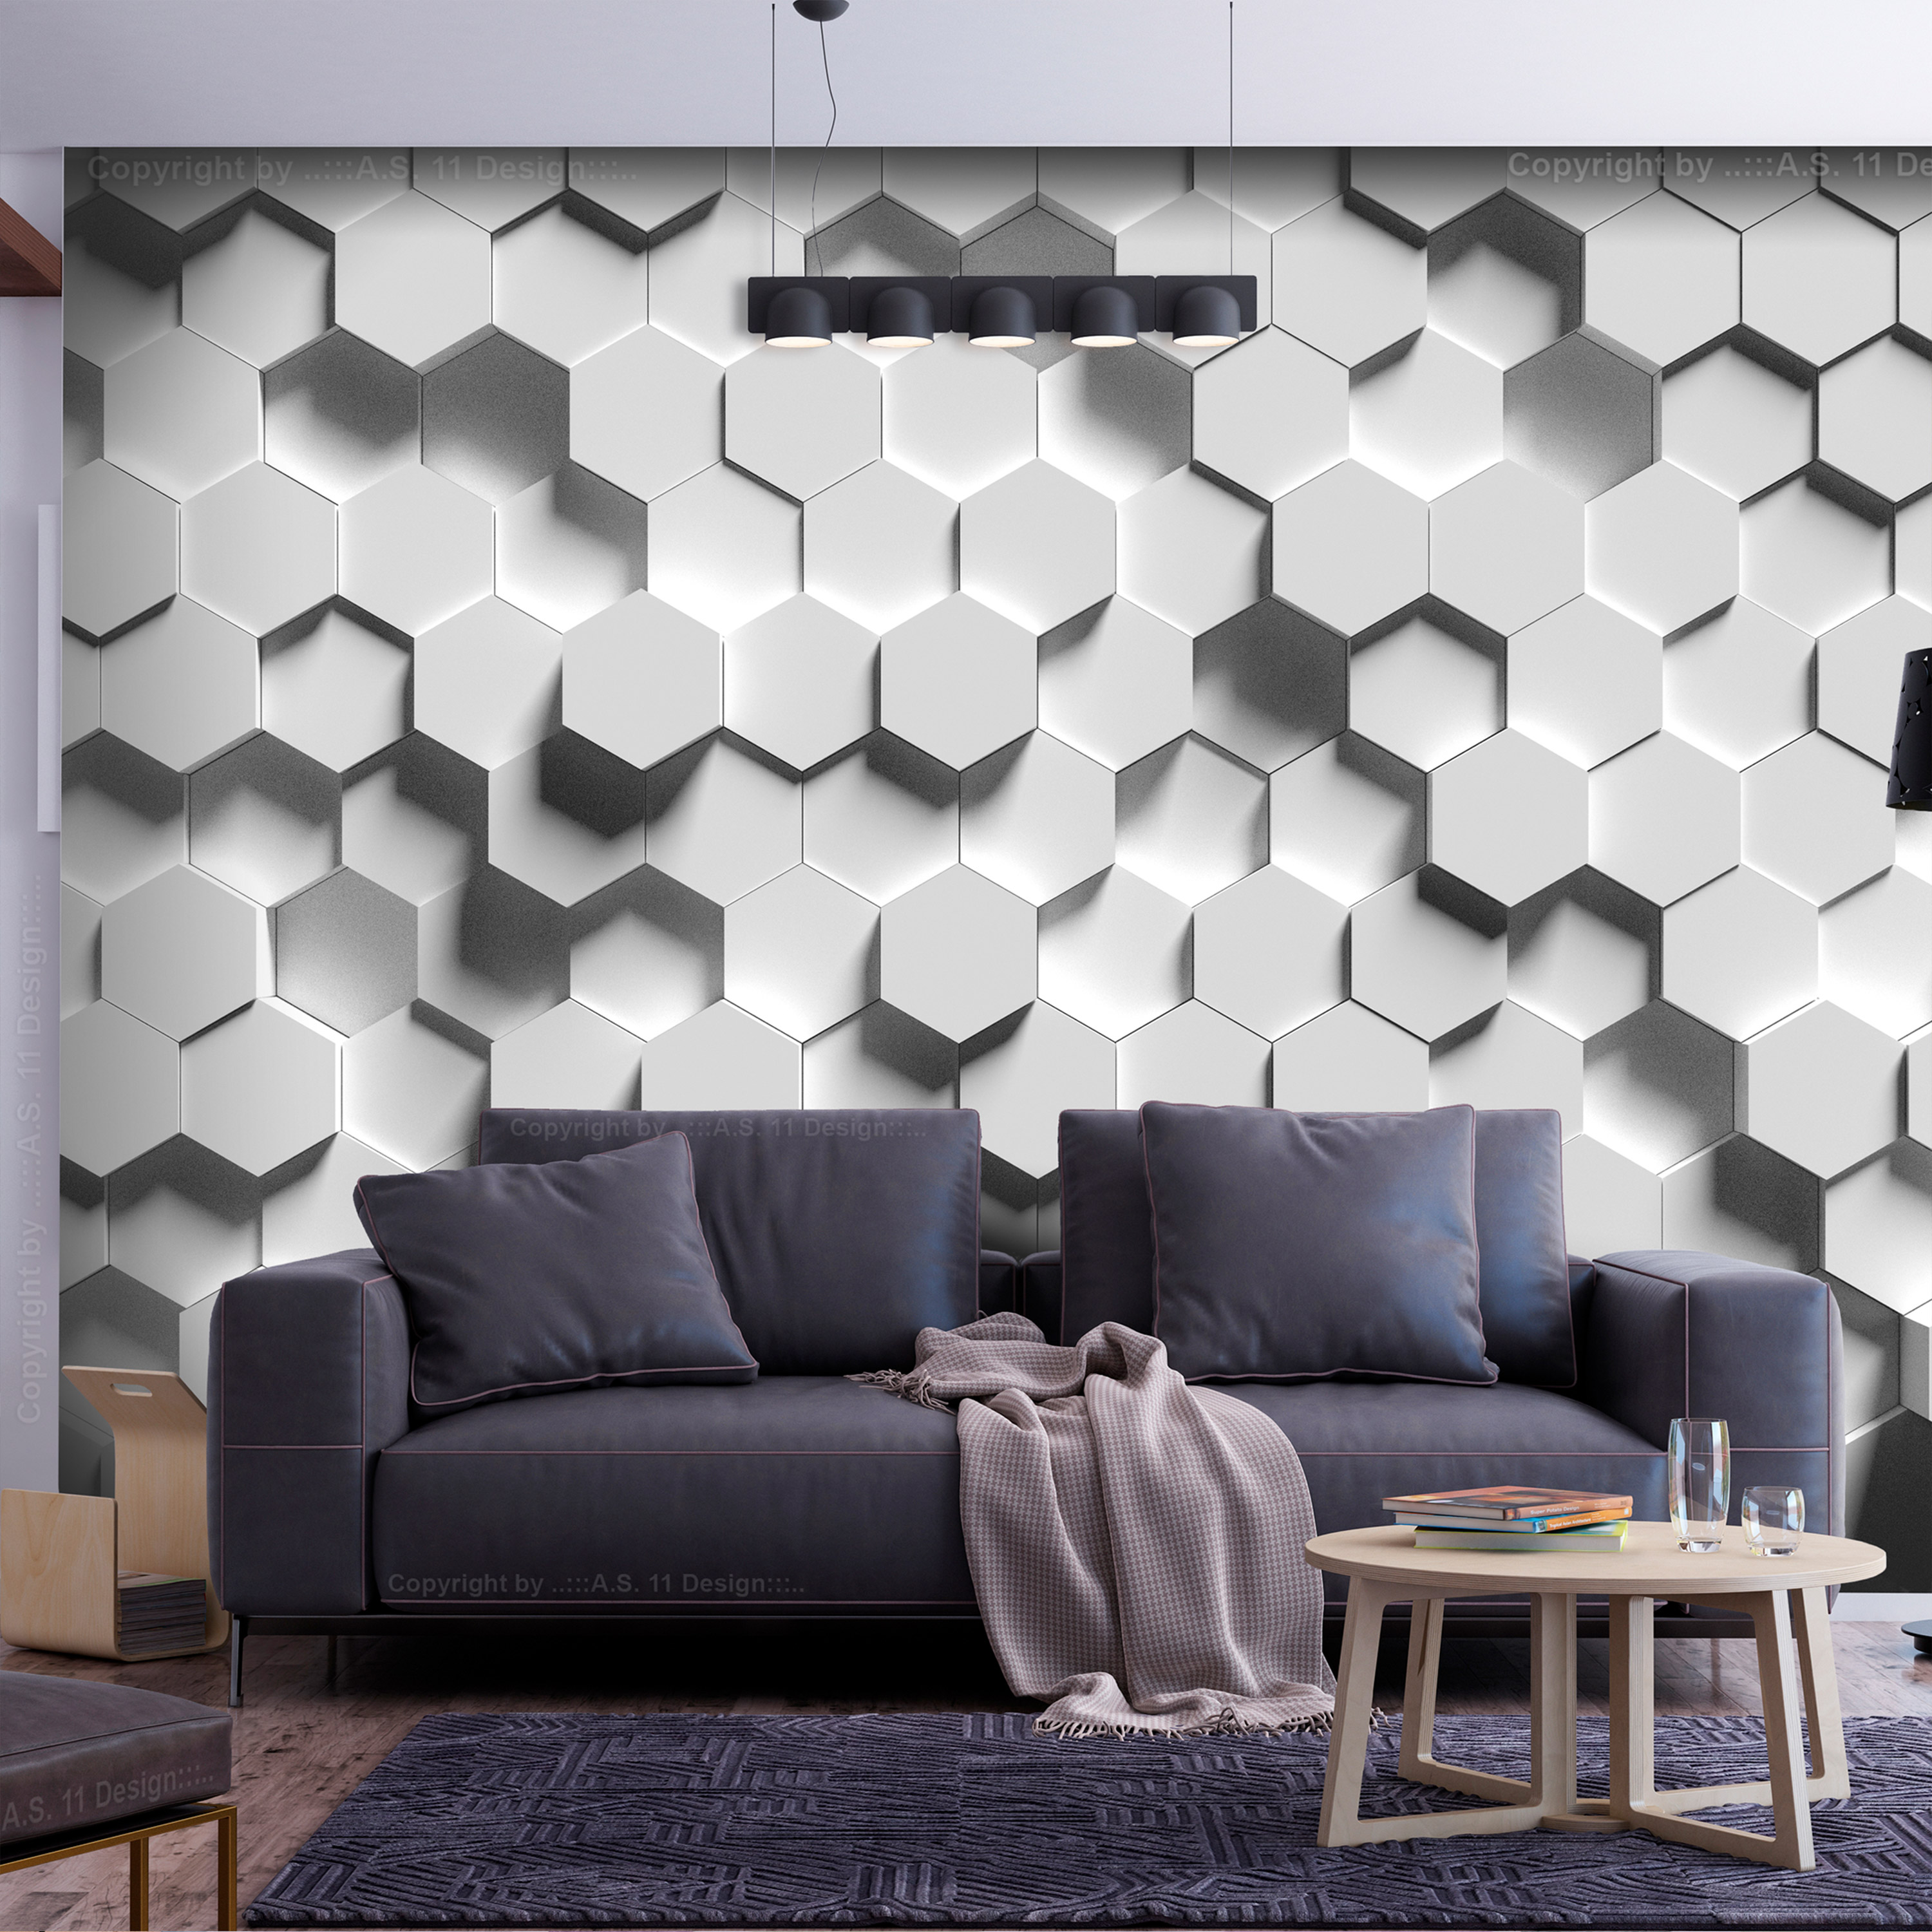 Self-adhesive Wallpaper - Hexagonal Awareness - 245x175